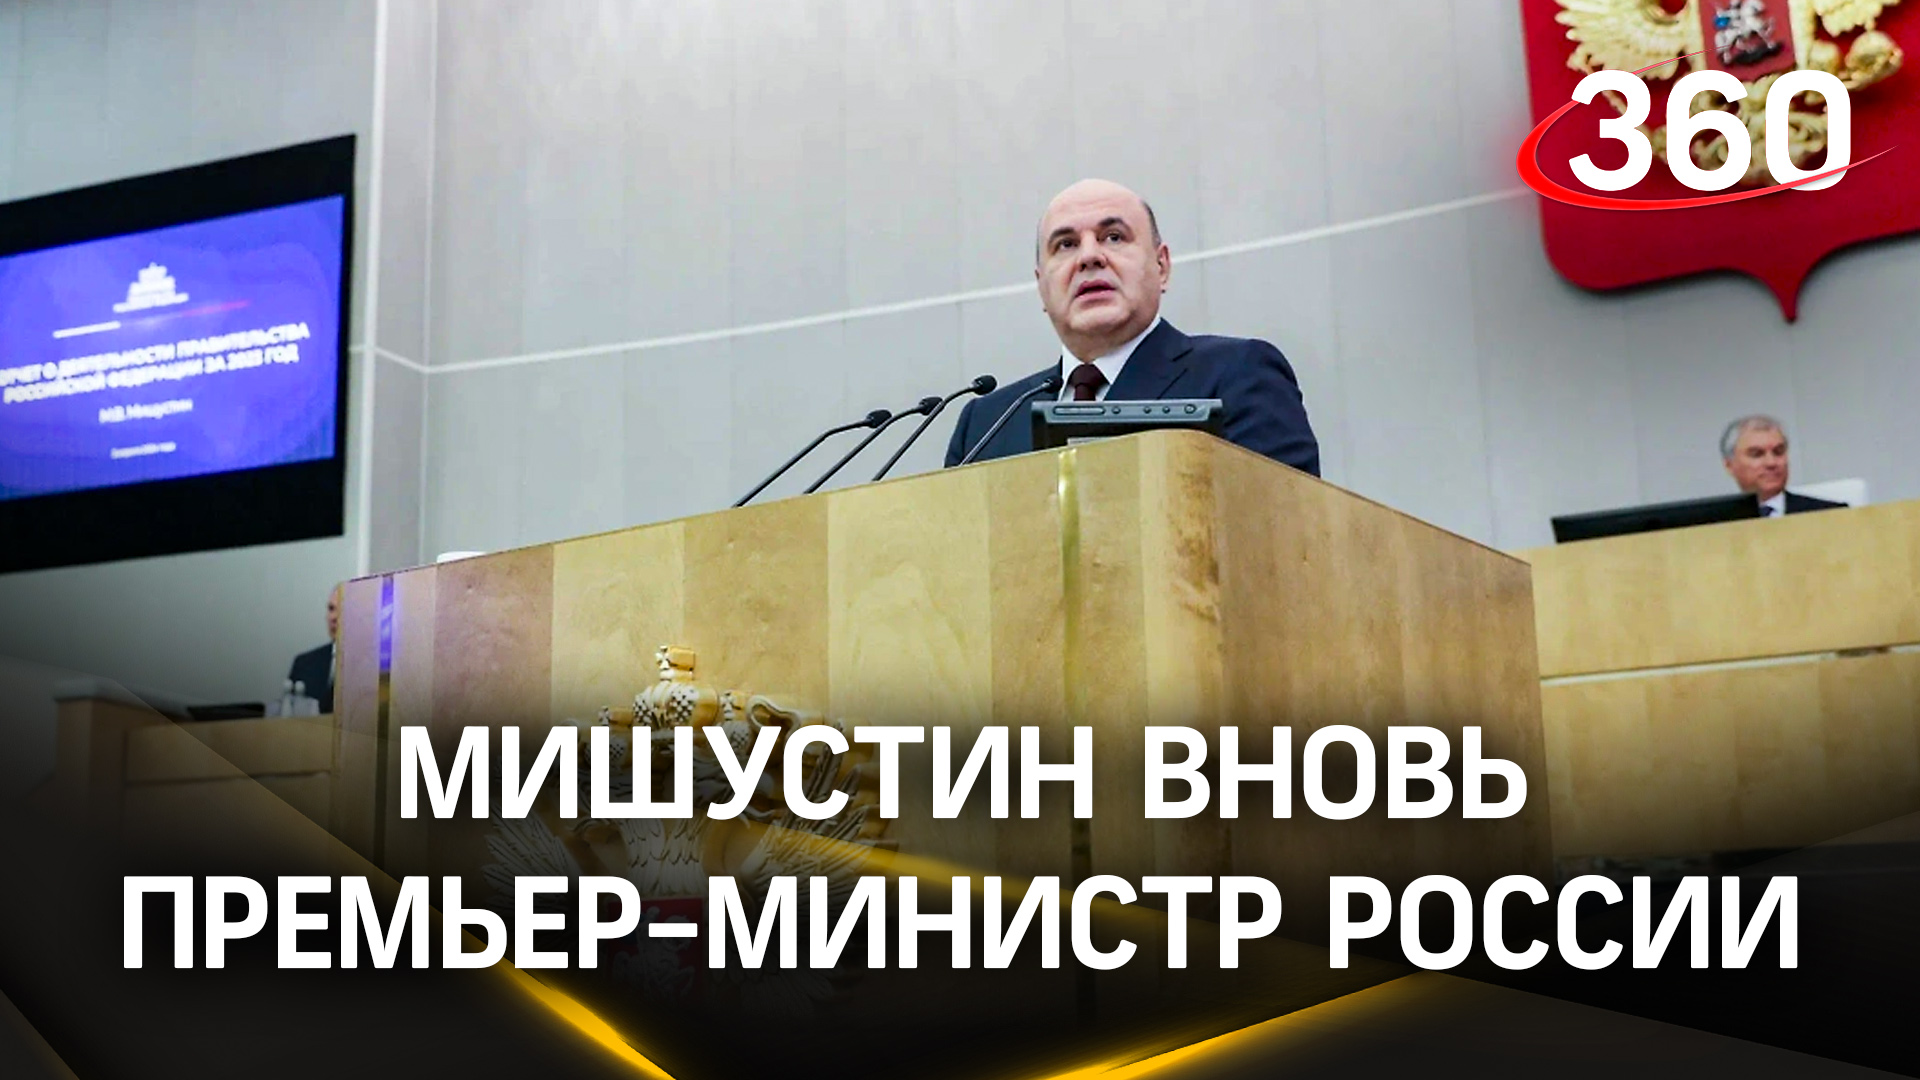 Мишустин вновь премьер-министр России. Госдума утвердила его кандидатуру большинством голосов